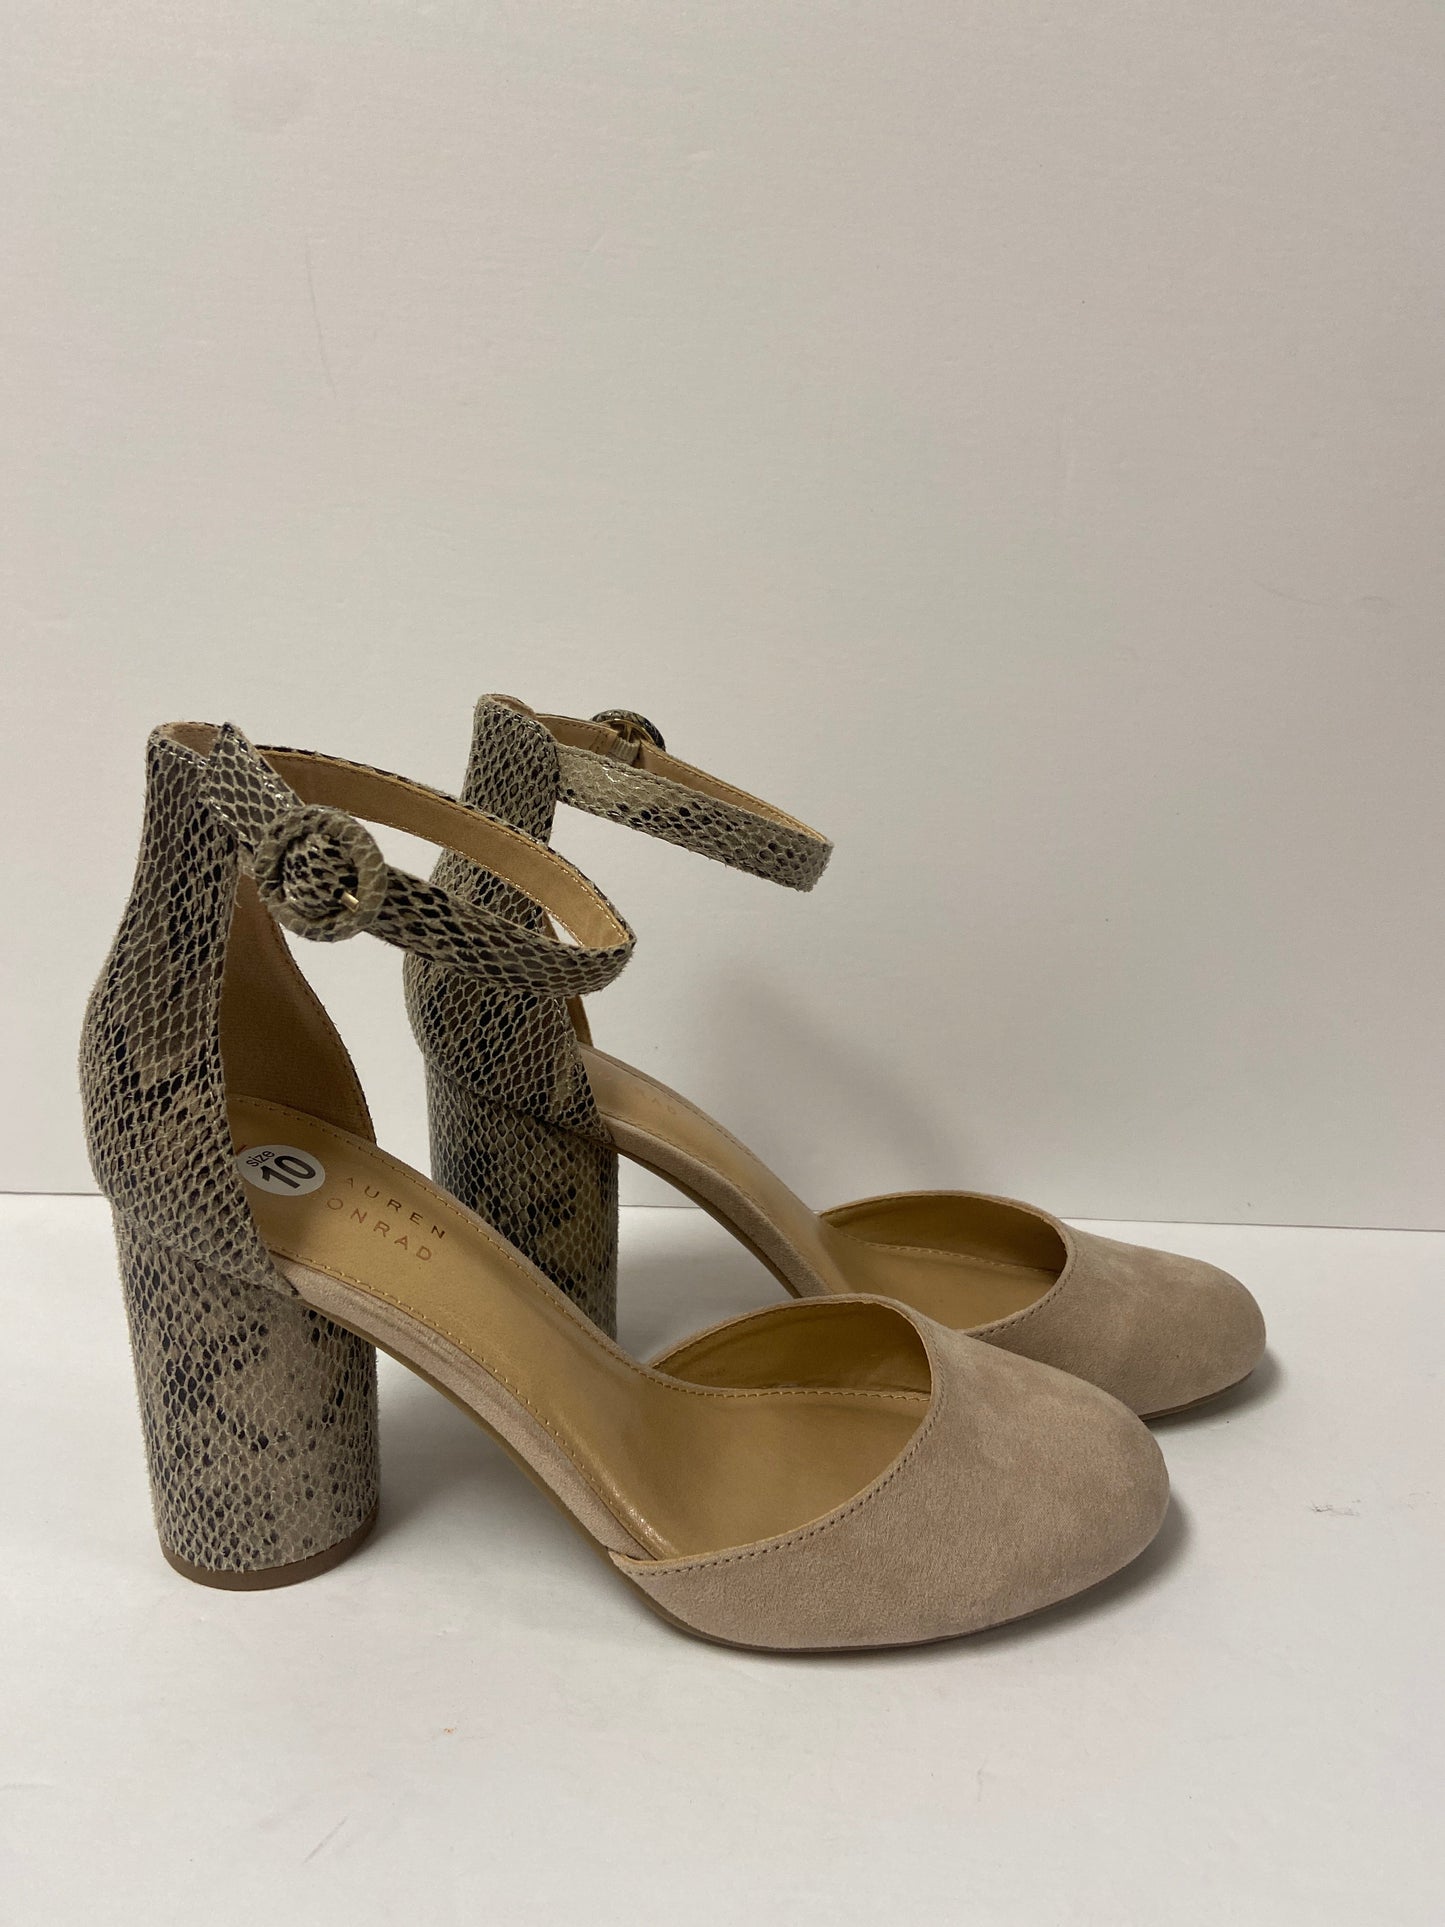 Shoes Heels Block By Lc Lauren Conrad  Size: 10